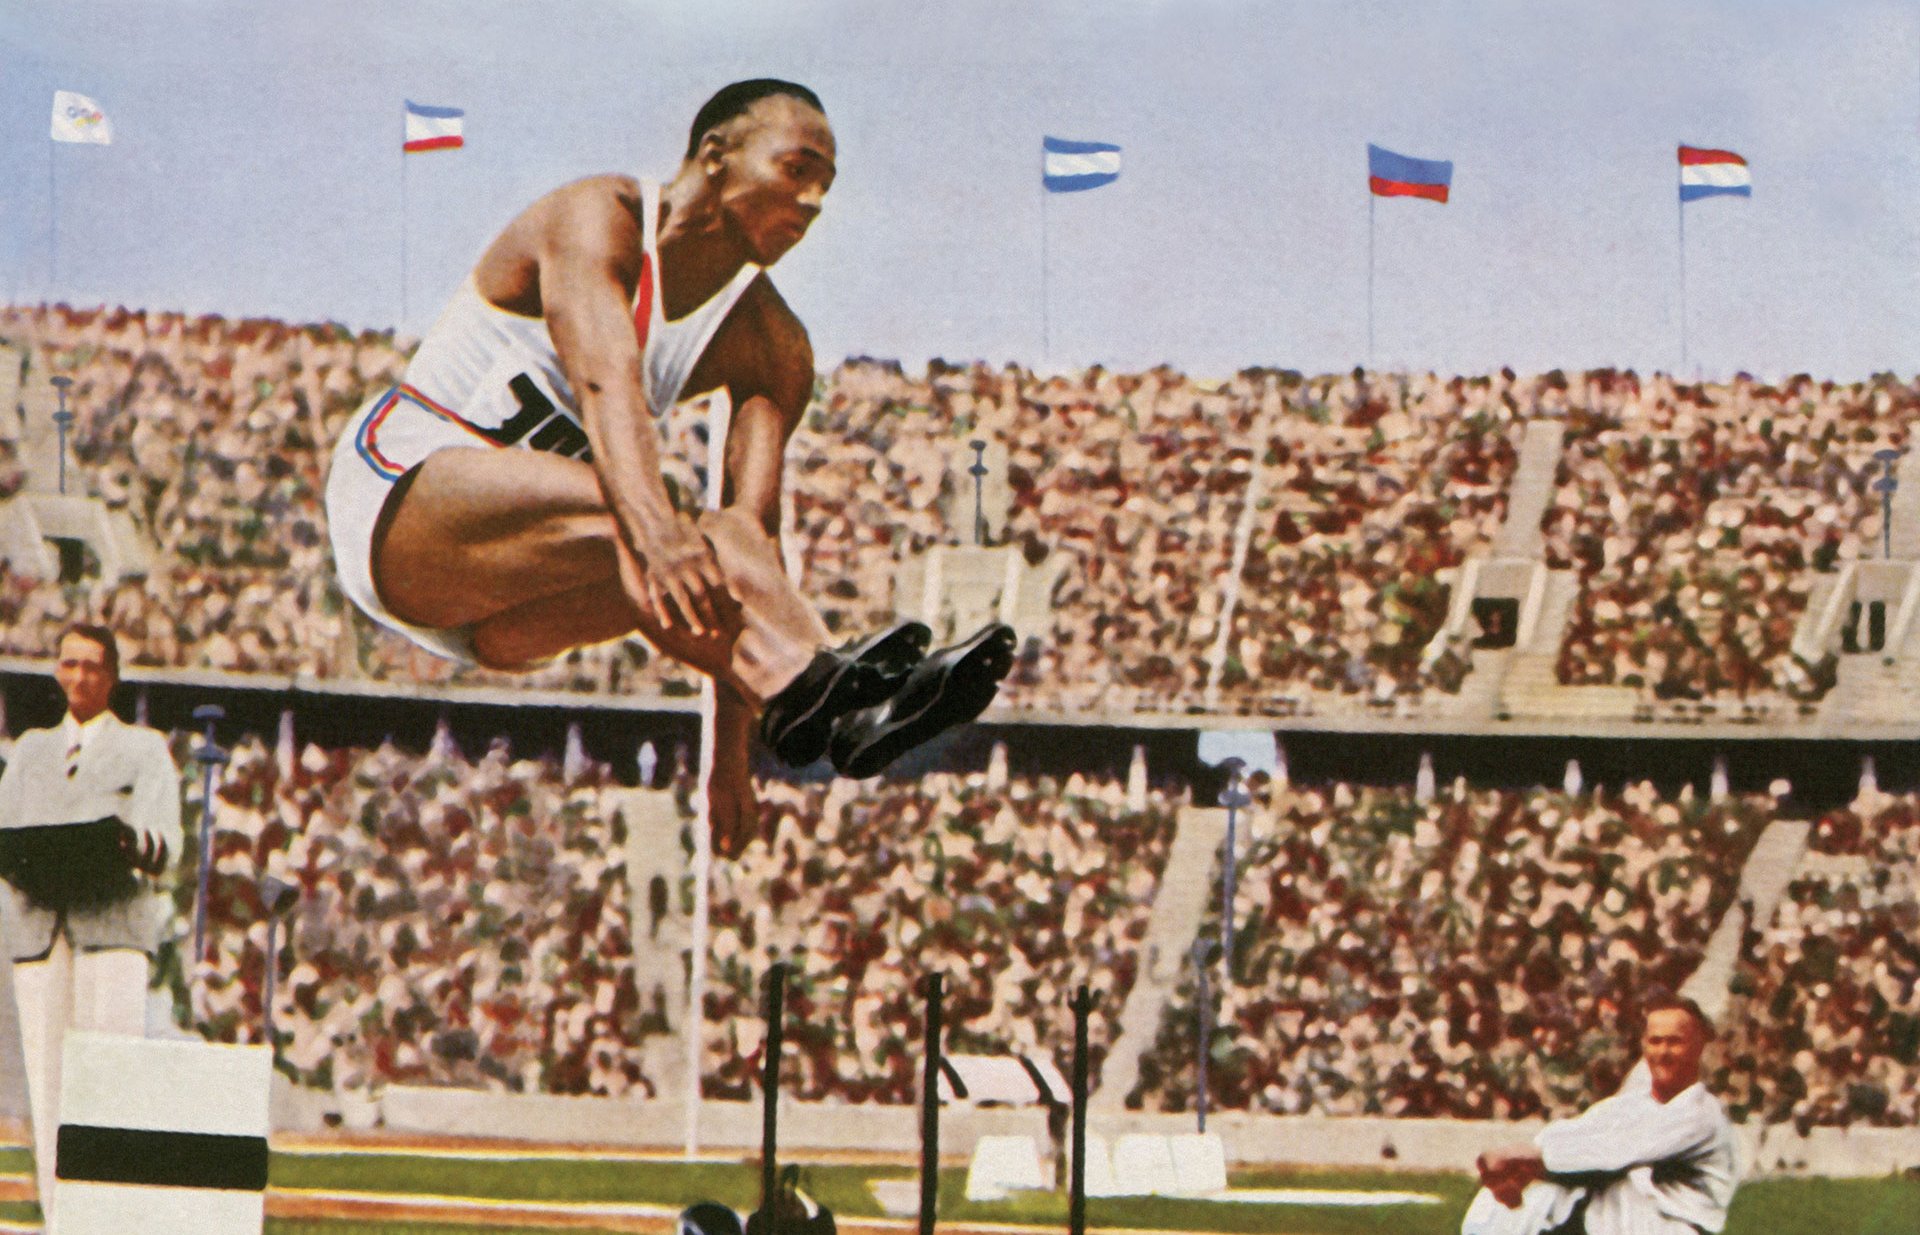 Photos Jesse Owens [États-Unis] au saut en longueur, carte postale colorisée, 1936.
